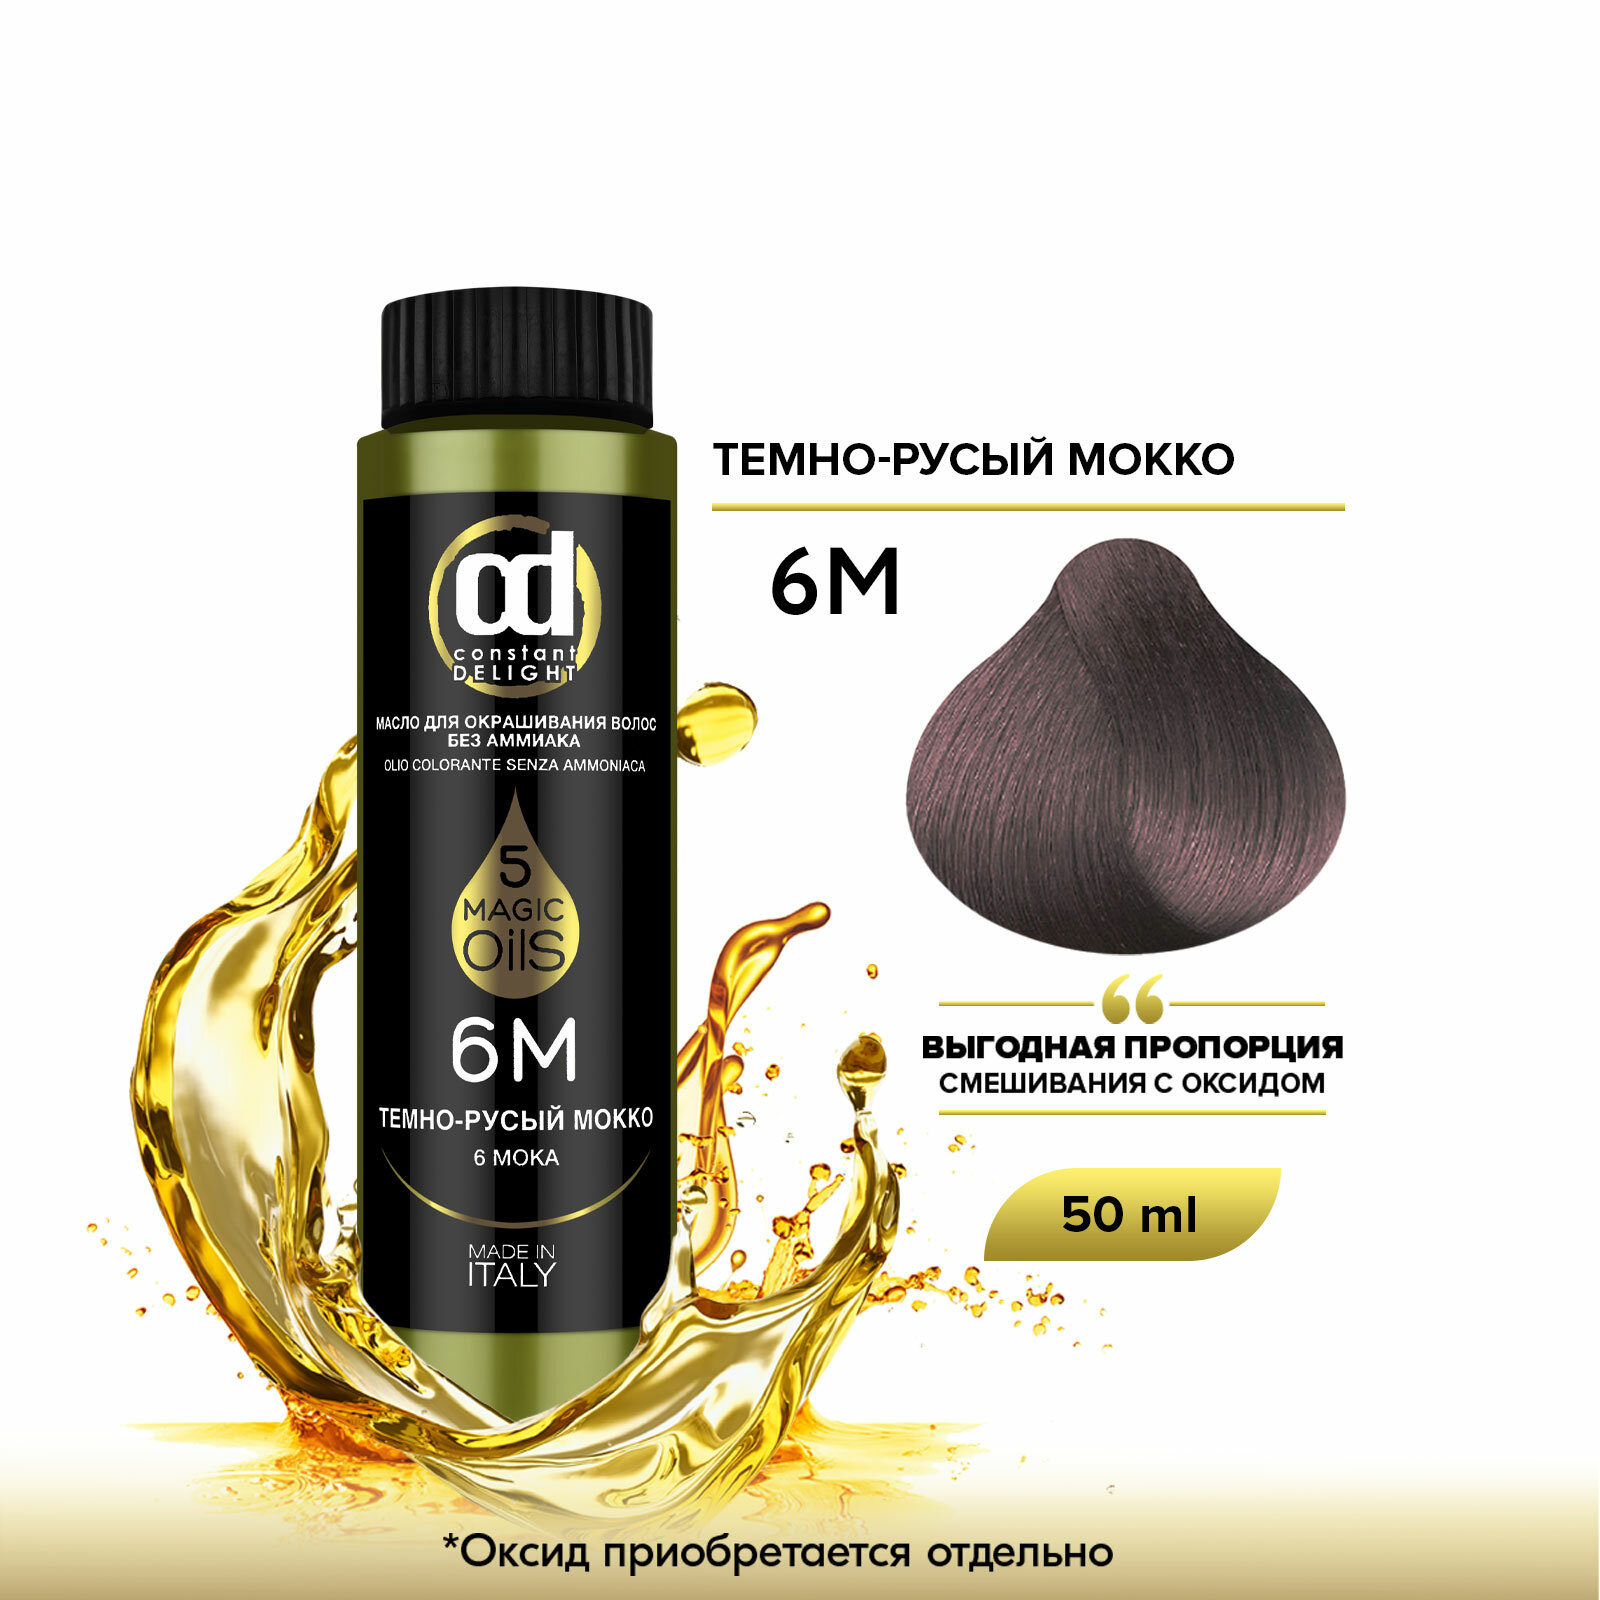 Масло MAGIC 5 OILS для окрашивания волос CONSTANT DELIGHT 6М темно-русый мокко 50 мл